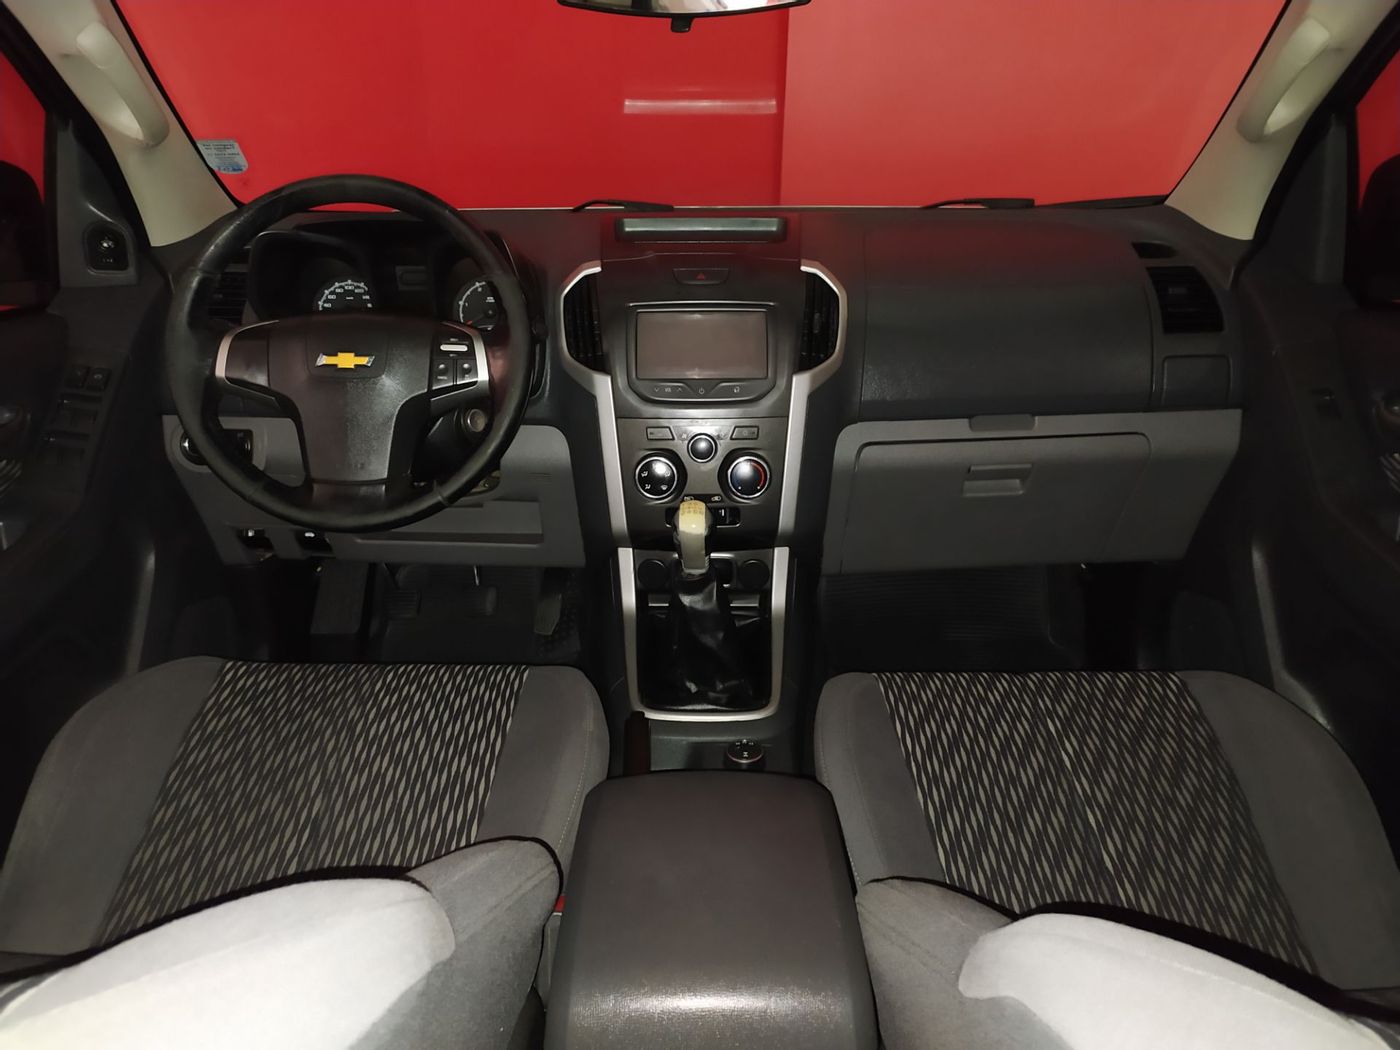 Chevrolet S10 Pick-Up LT 2.8 TDI 4x4 CD Diesel